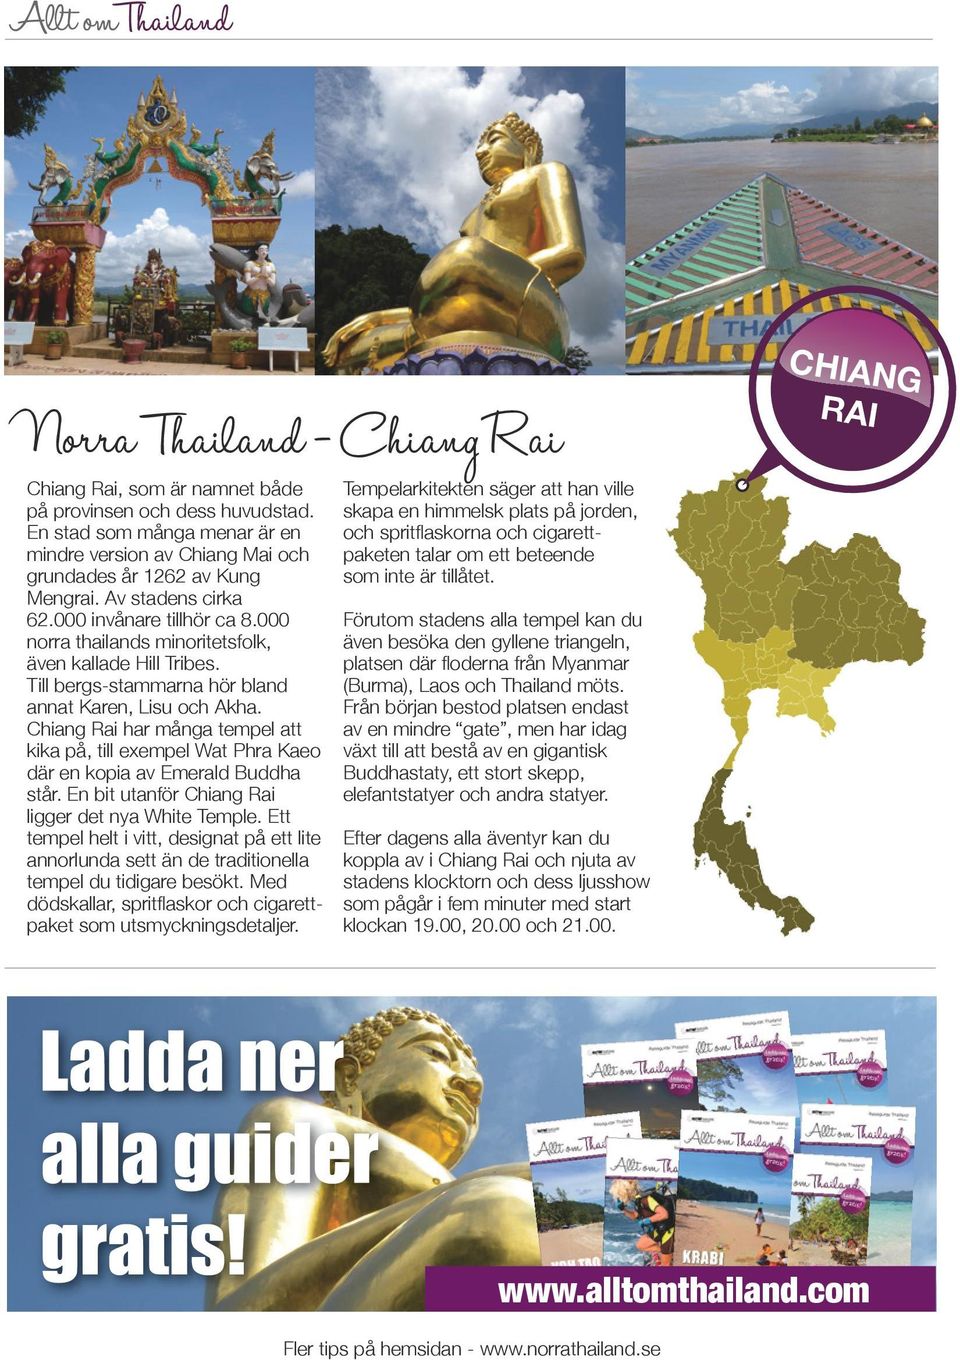 Chiang Rai har många tempel att kika på, till exempel Wat Phra Kaeo där en kopia av Emerald Buddha står. En bit utanför Chiang Rai ligger det nya White Temple.